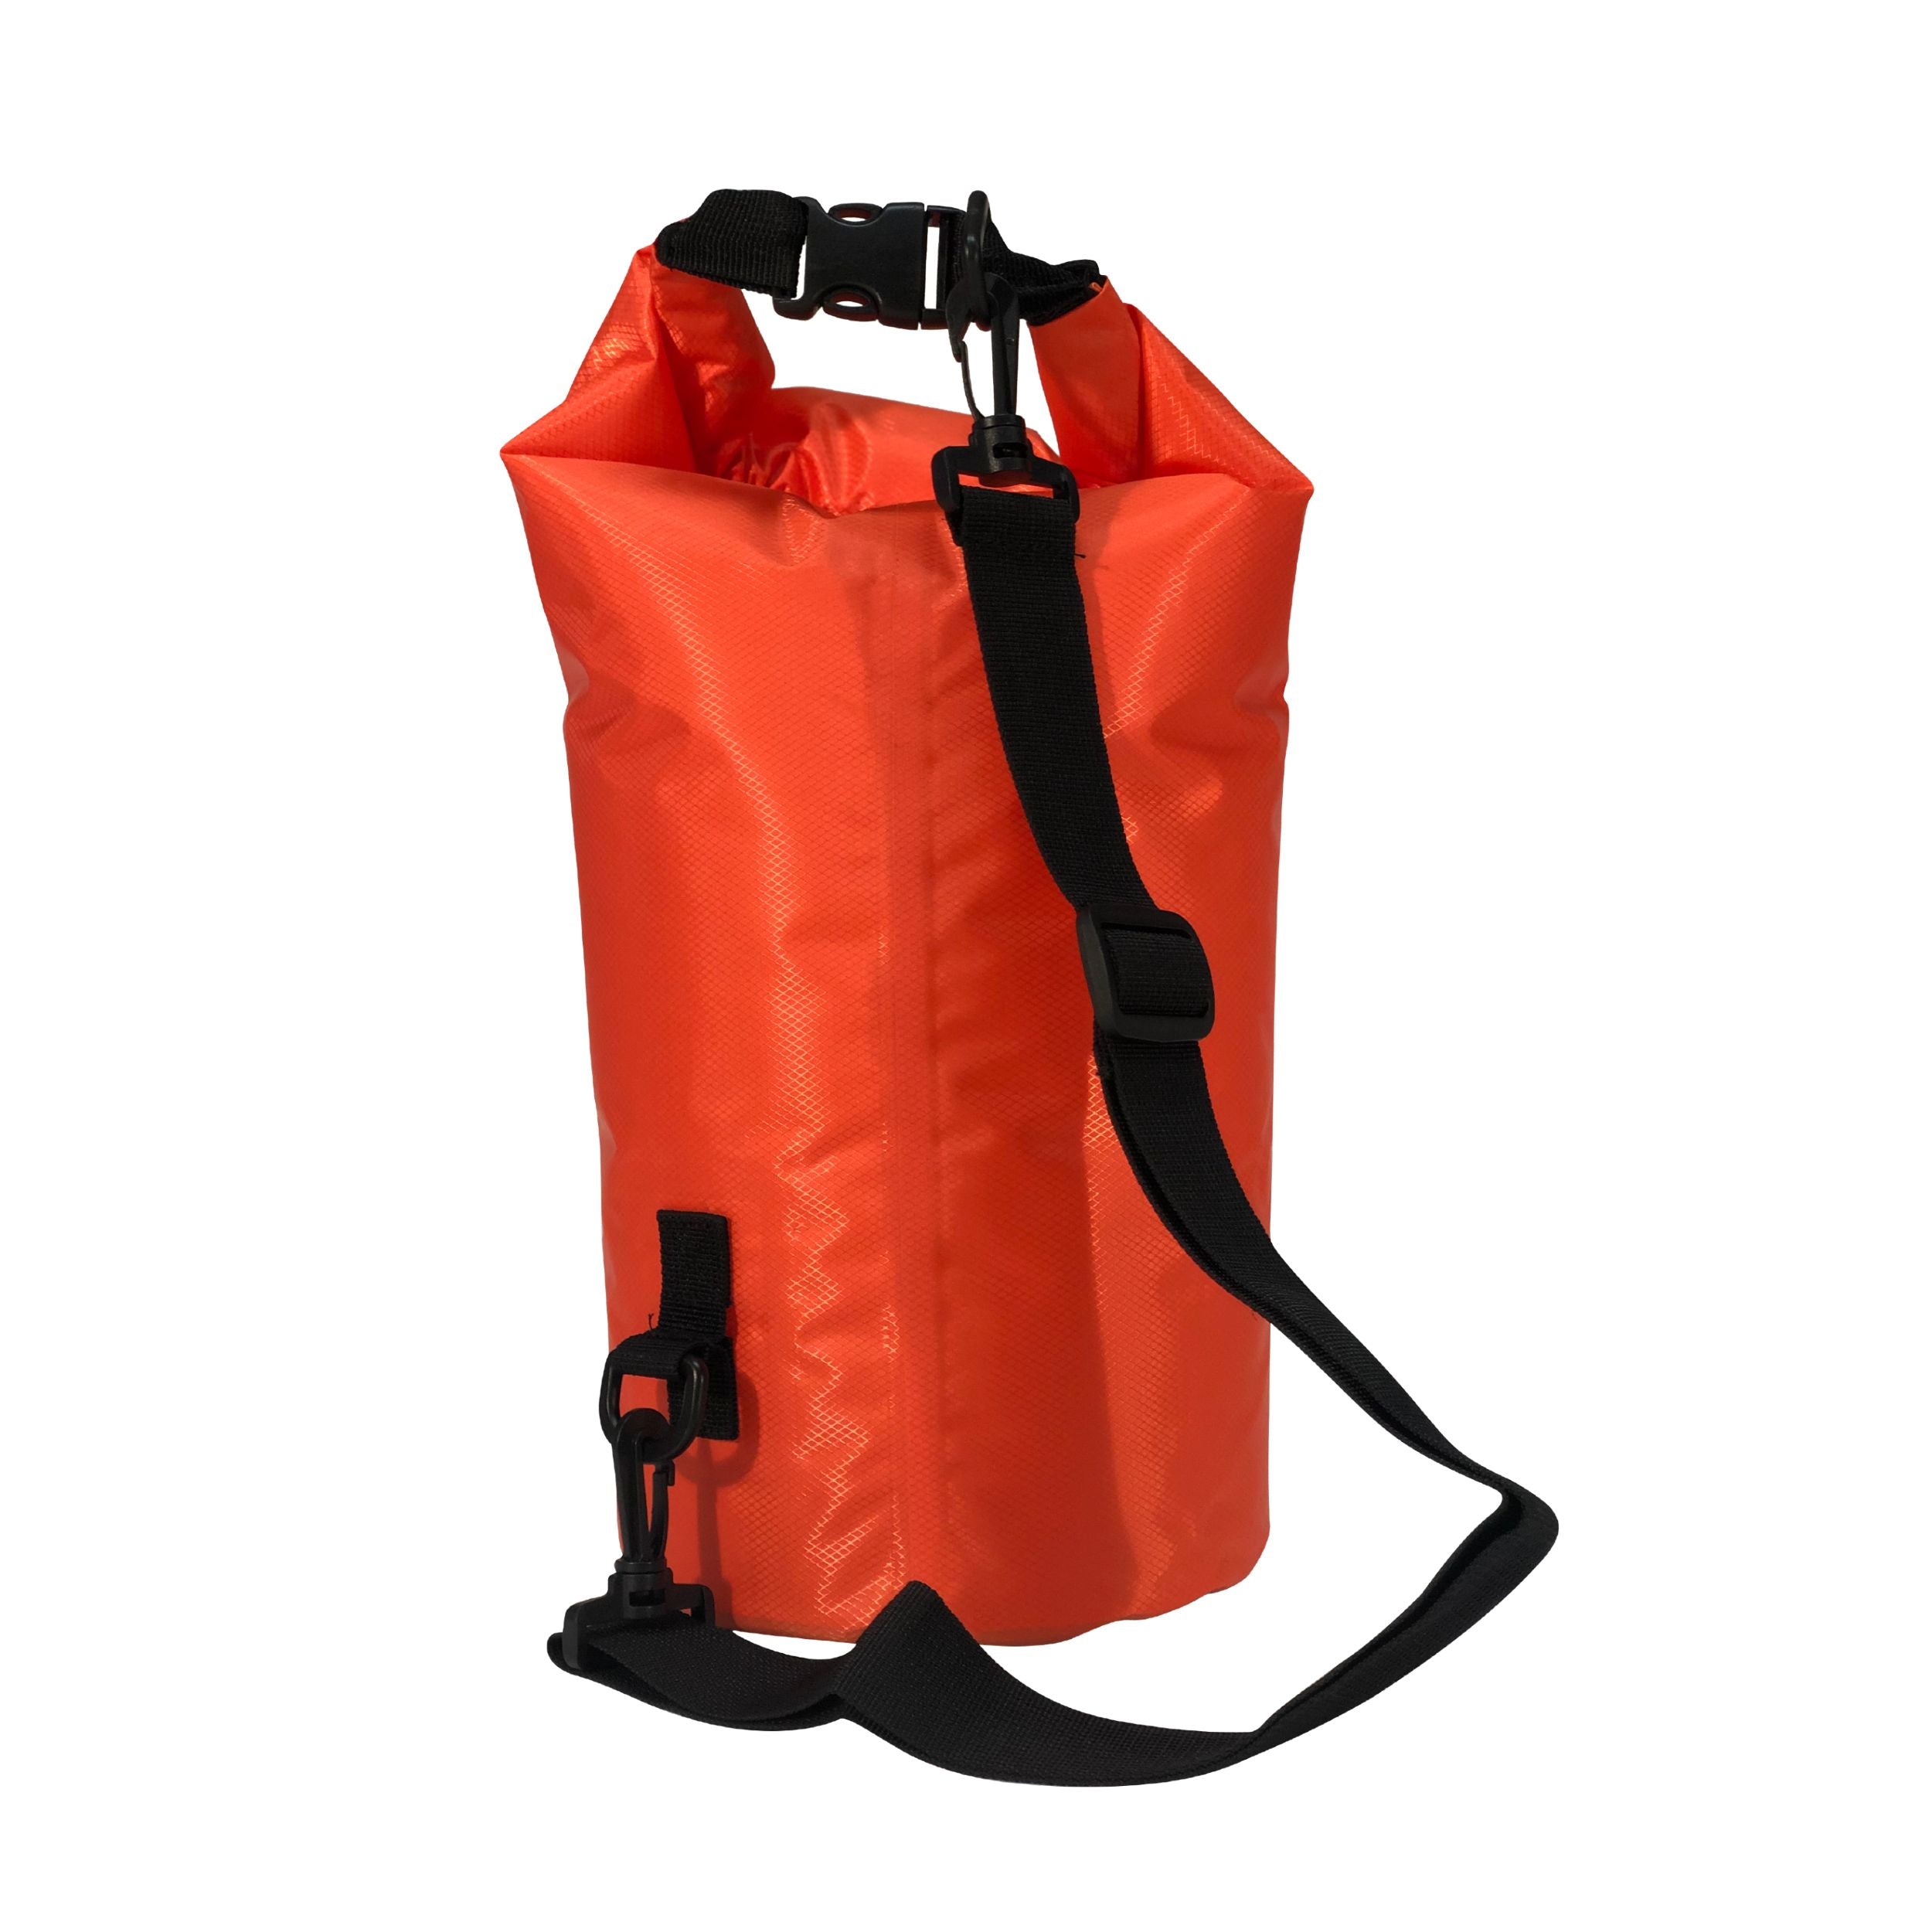 Outlife Waterproof Dry Bag 8 Liters